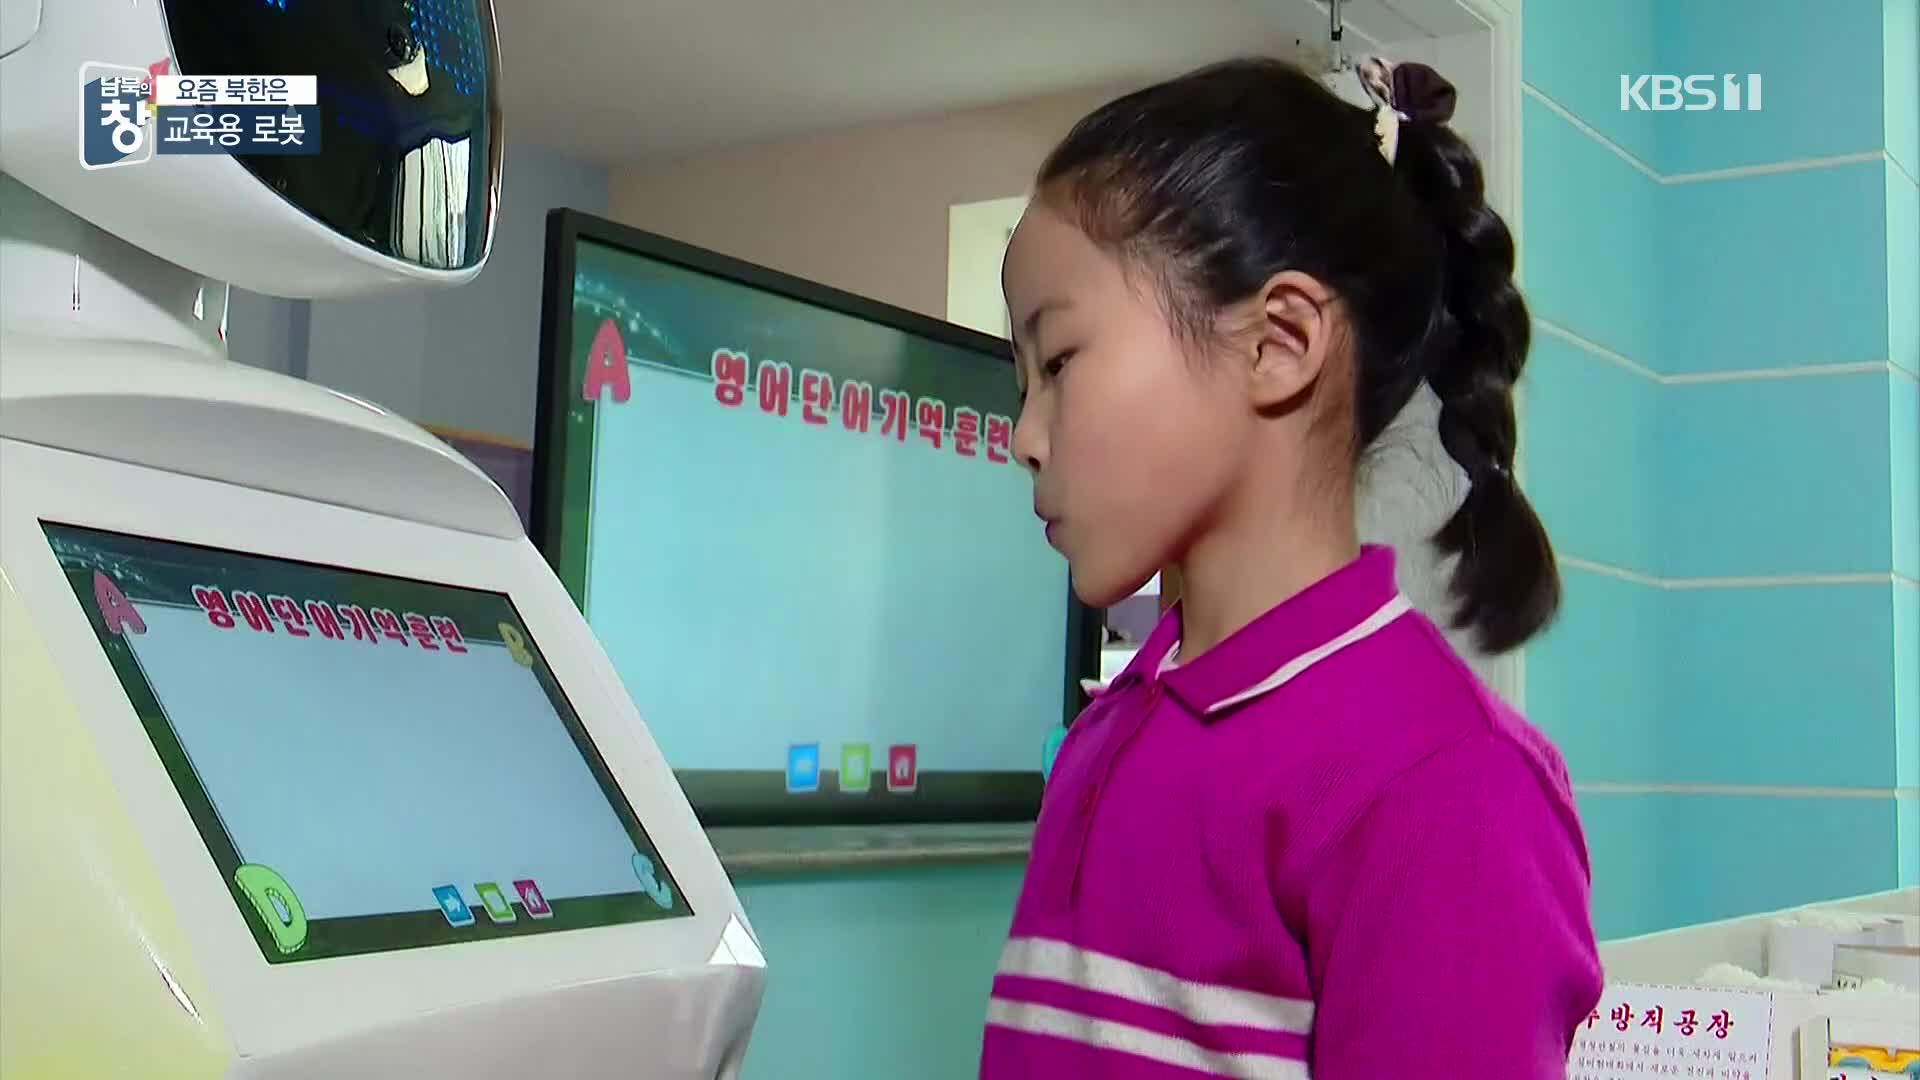 [요즘 북한은] 교실에 나온 로봇…북한 AI 수준은? 외